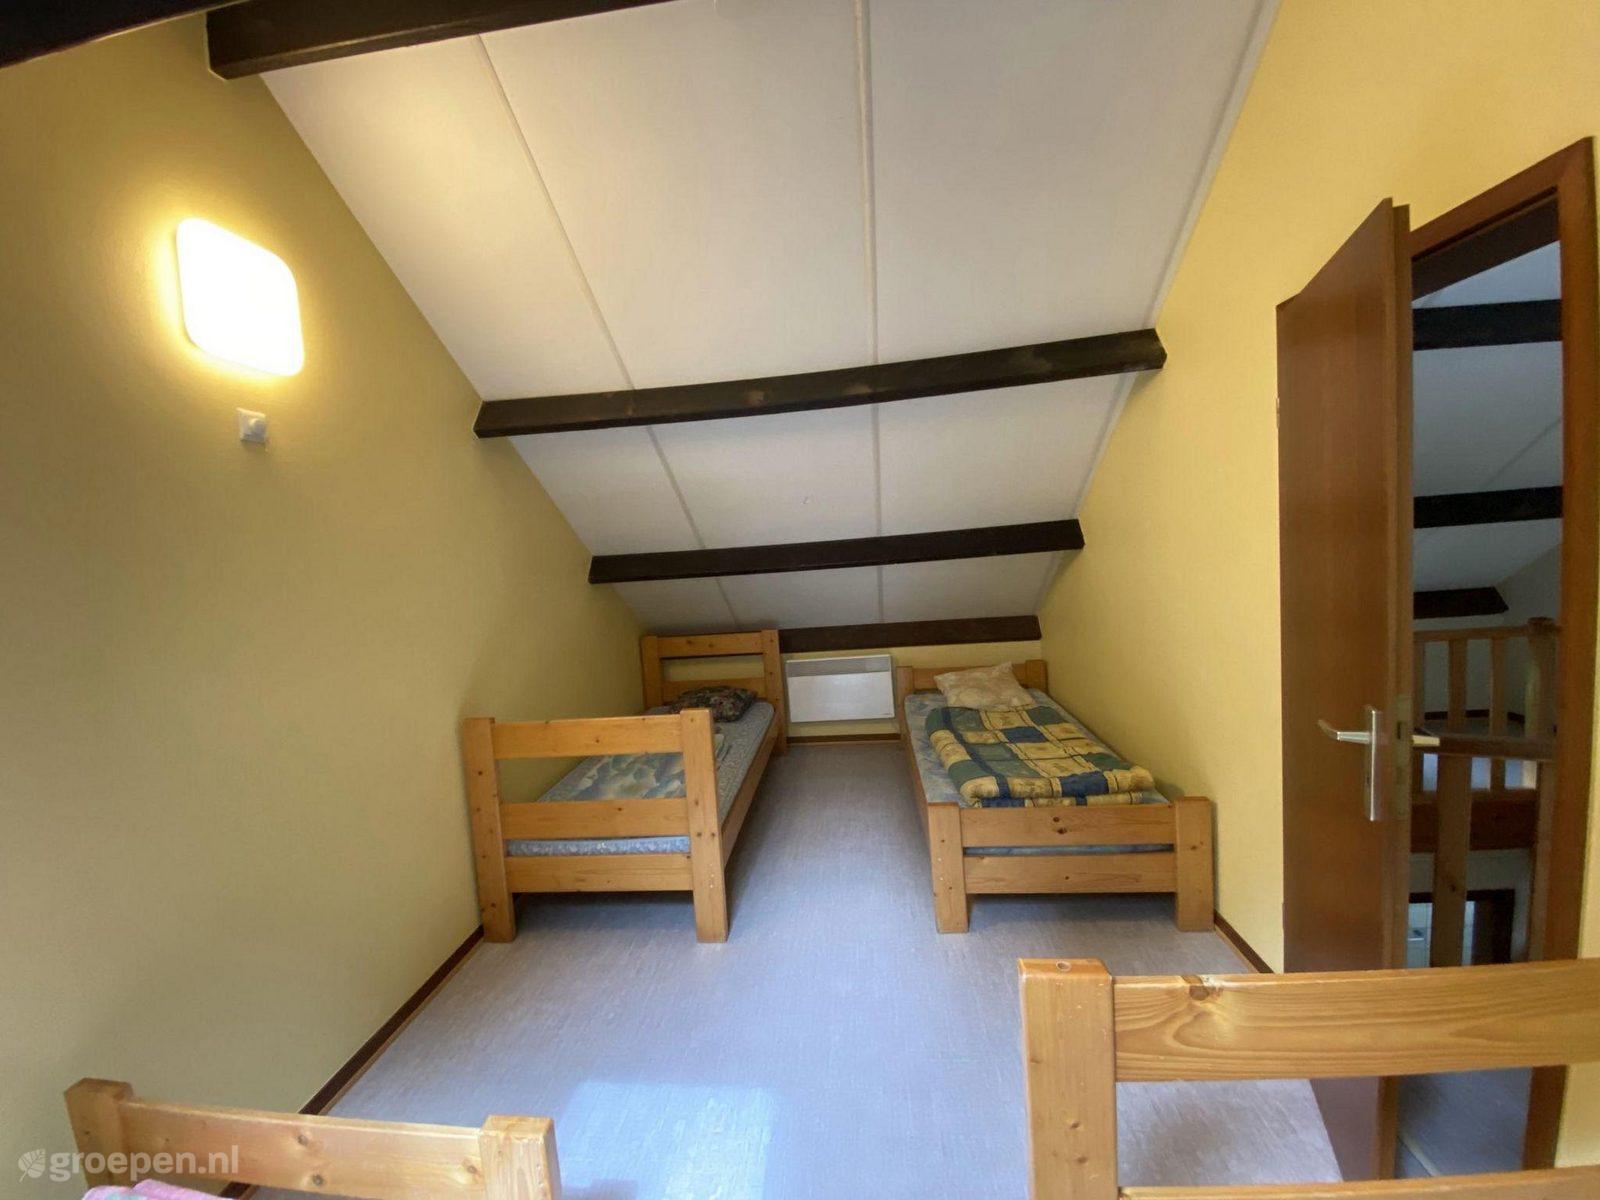 Group accommodation Houffalize